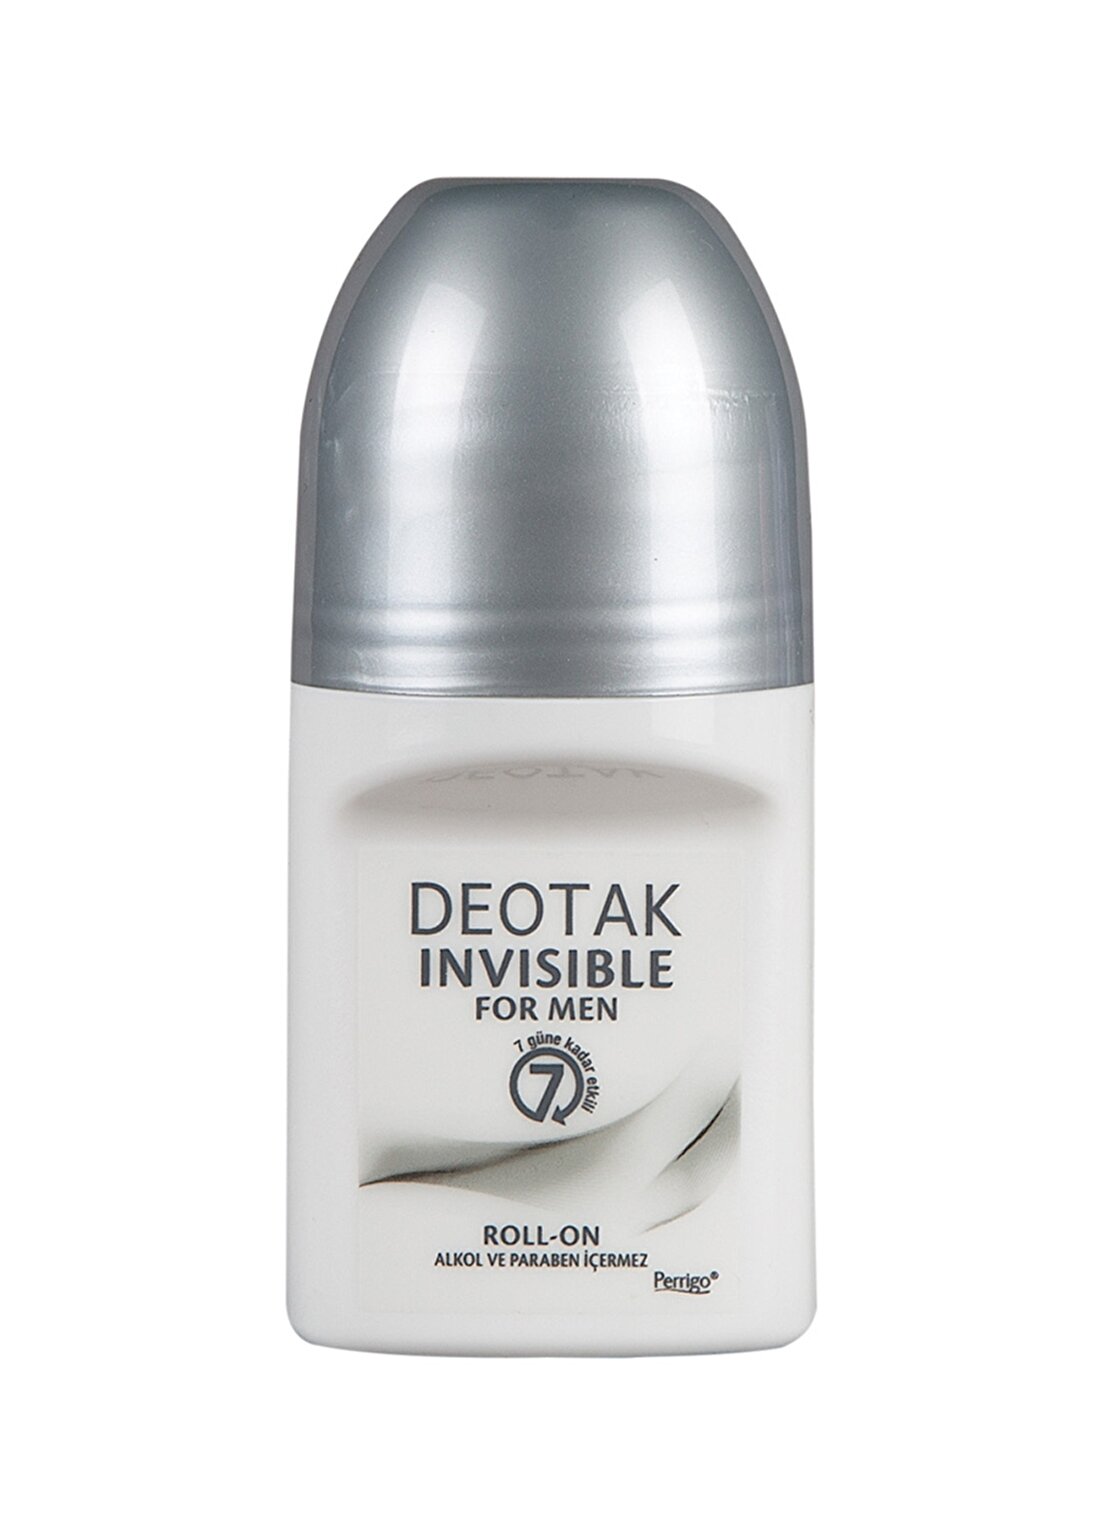 Sebamed Deotak For Men 35 Ml Invisible Roll-On Deodorant